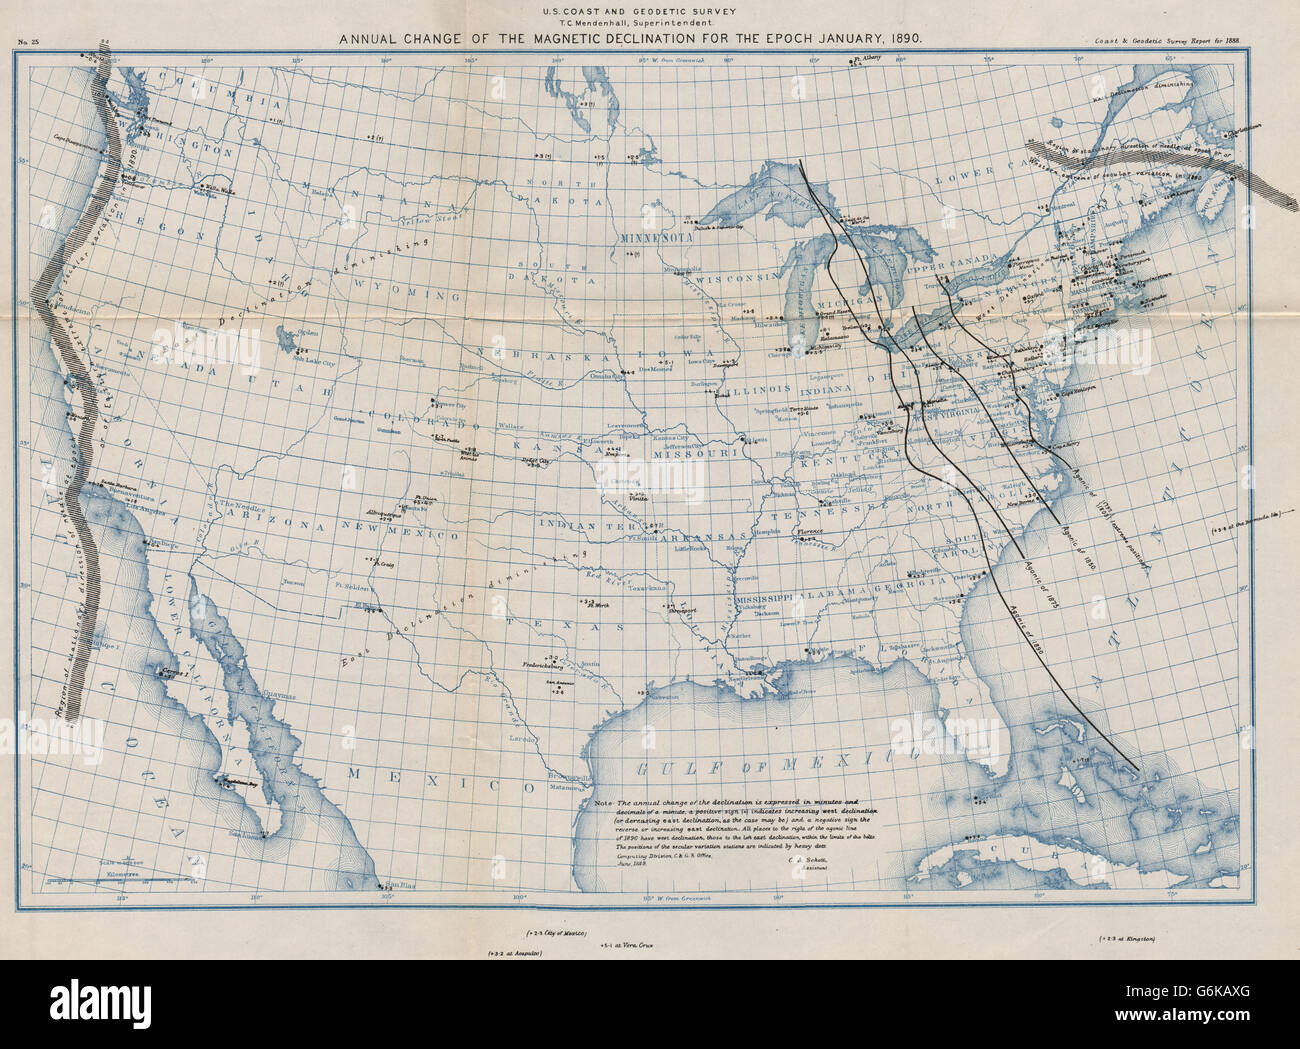 USA: magnetische Deklination jährliche Veränderung. Agonic Linien 1797-1890. USCGS, 1889-Karte Stockfoto